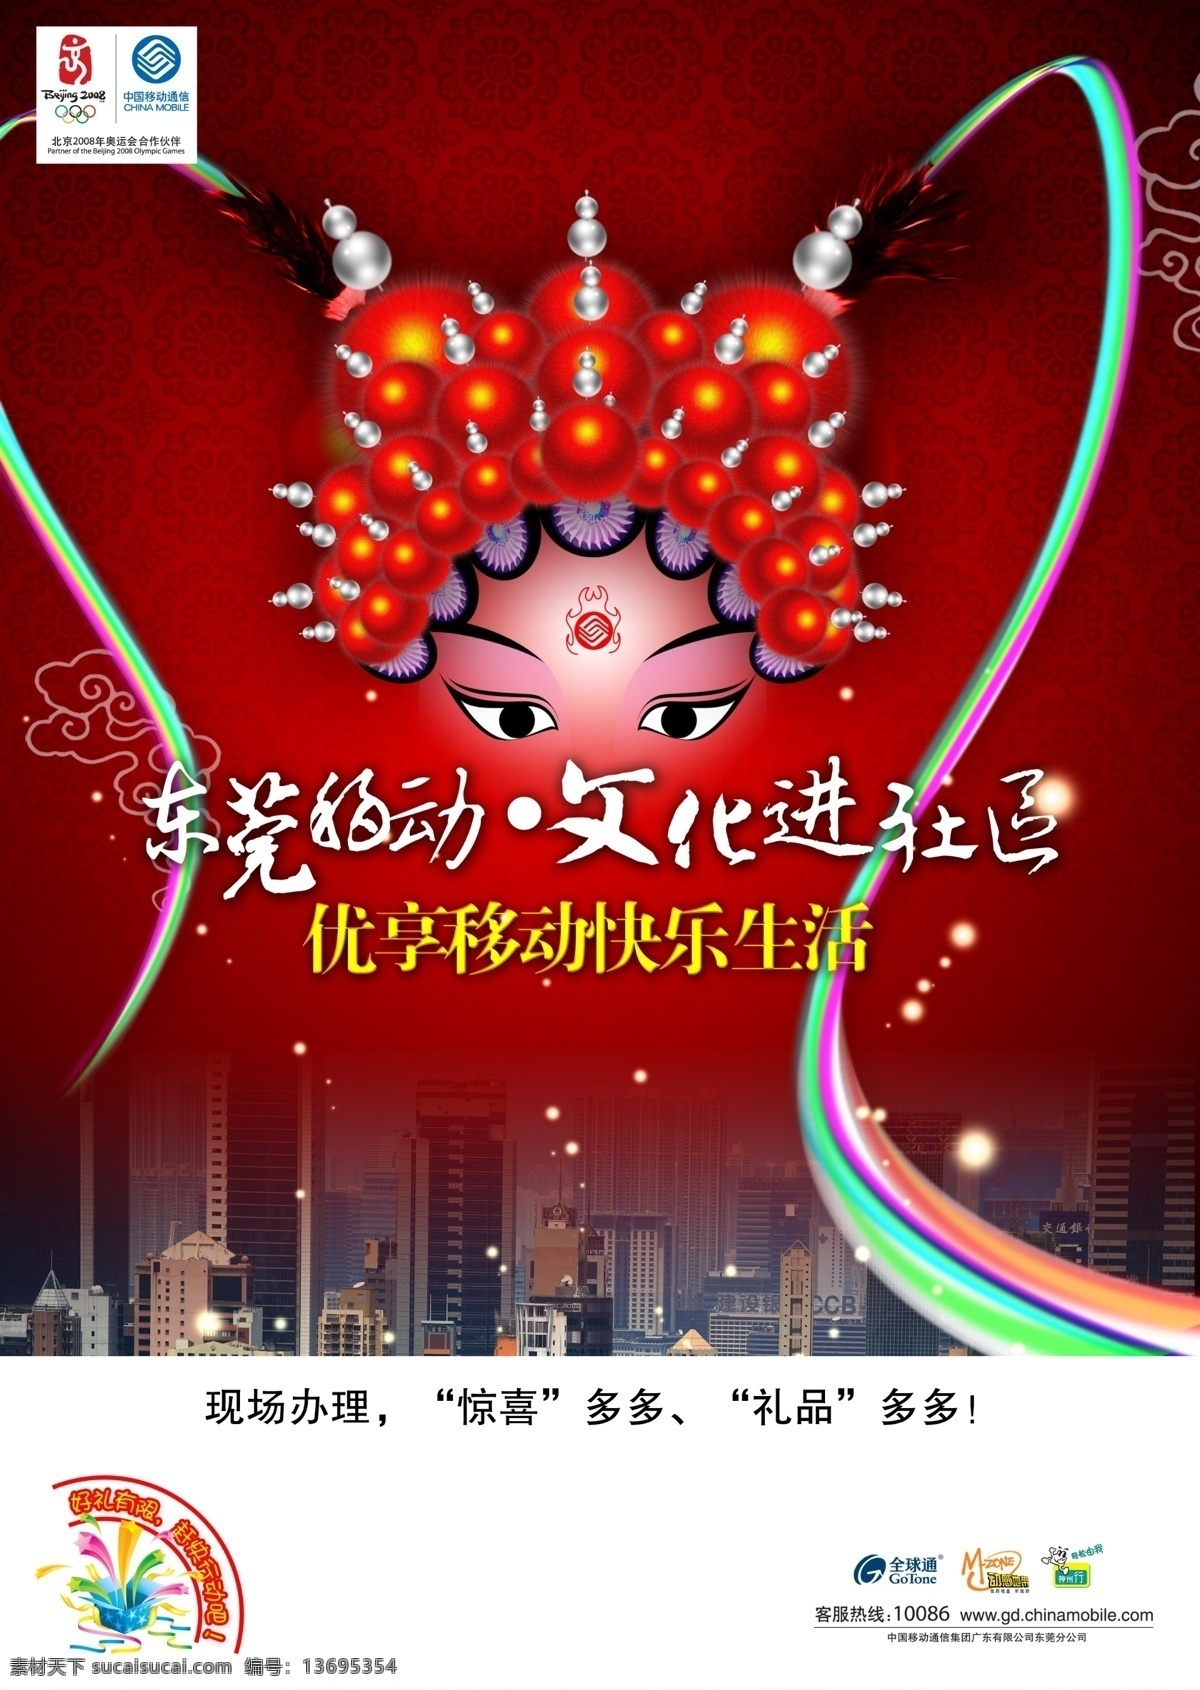 中国移动 文化节 通讯 类 通讯类海报 简约风格 创意海报 海报 红色